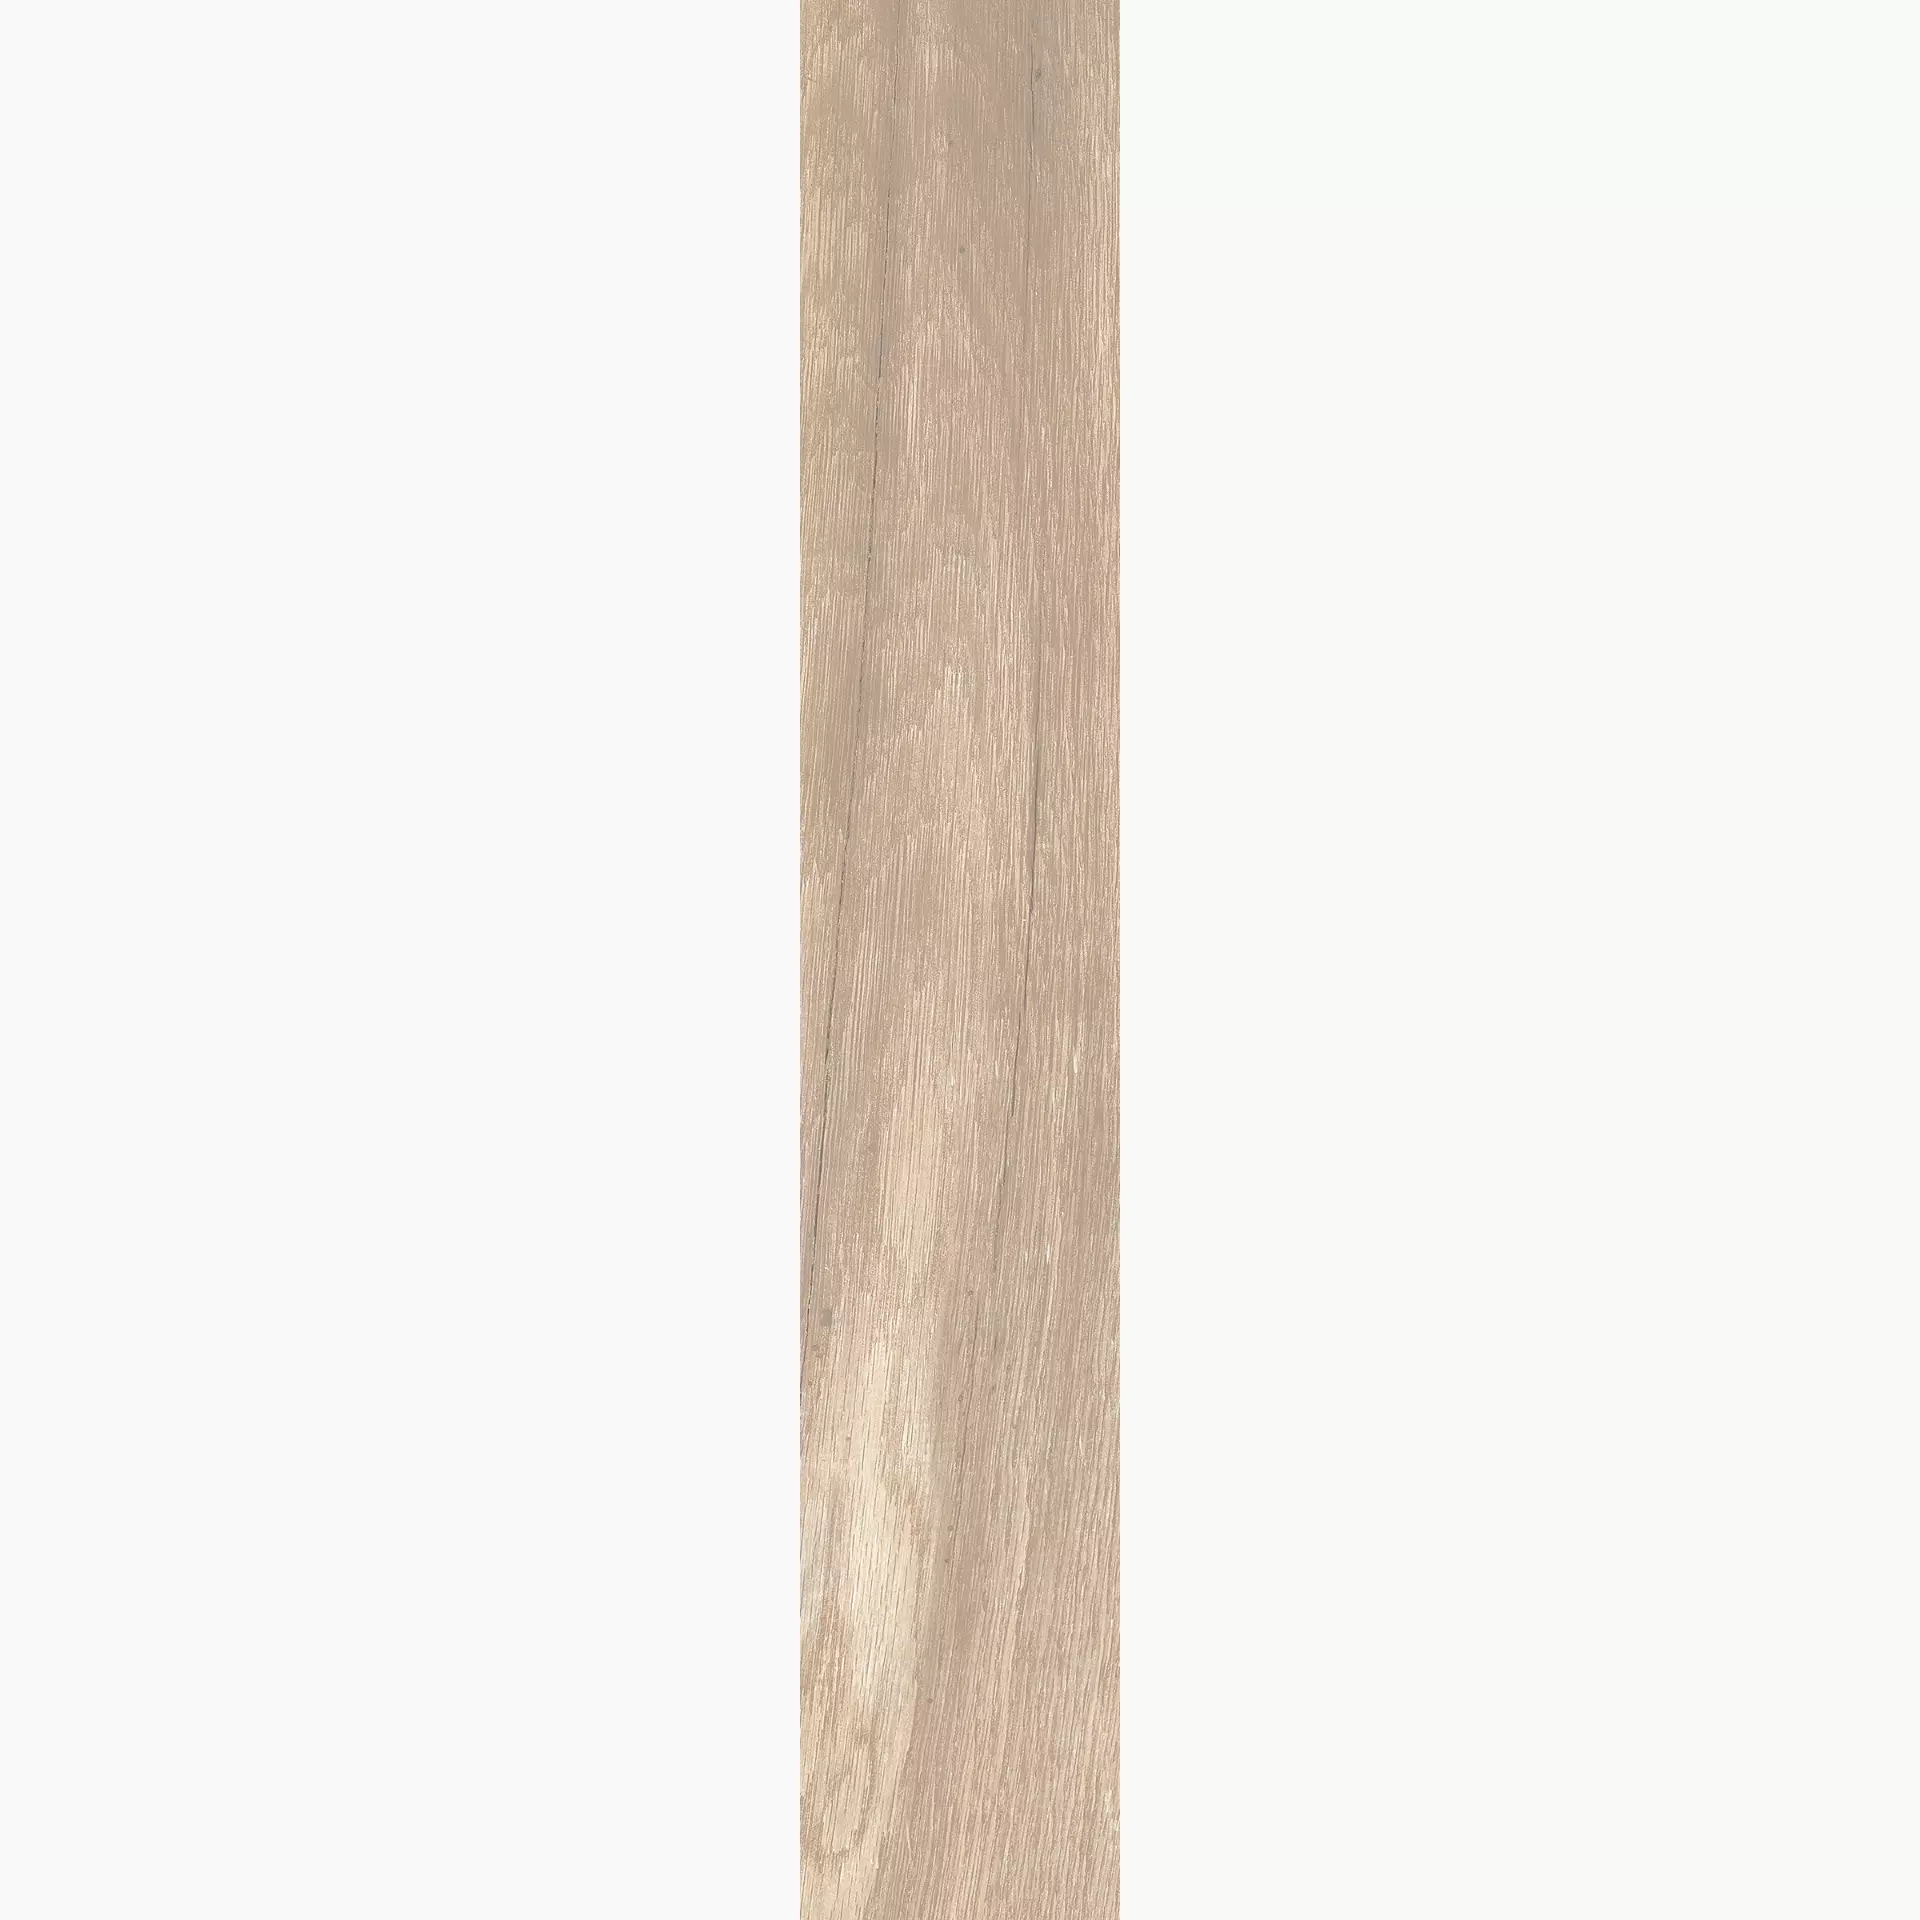 KRONOS Woodside Oak Grip 6681 20x120cm rectified 20mm